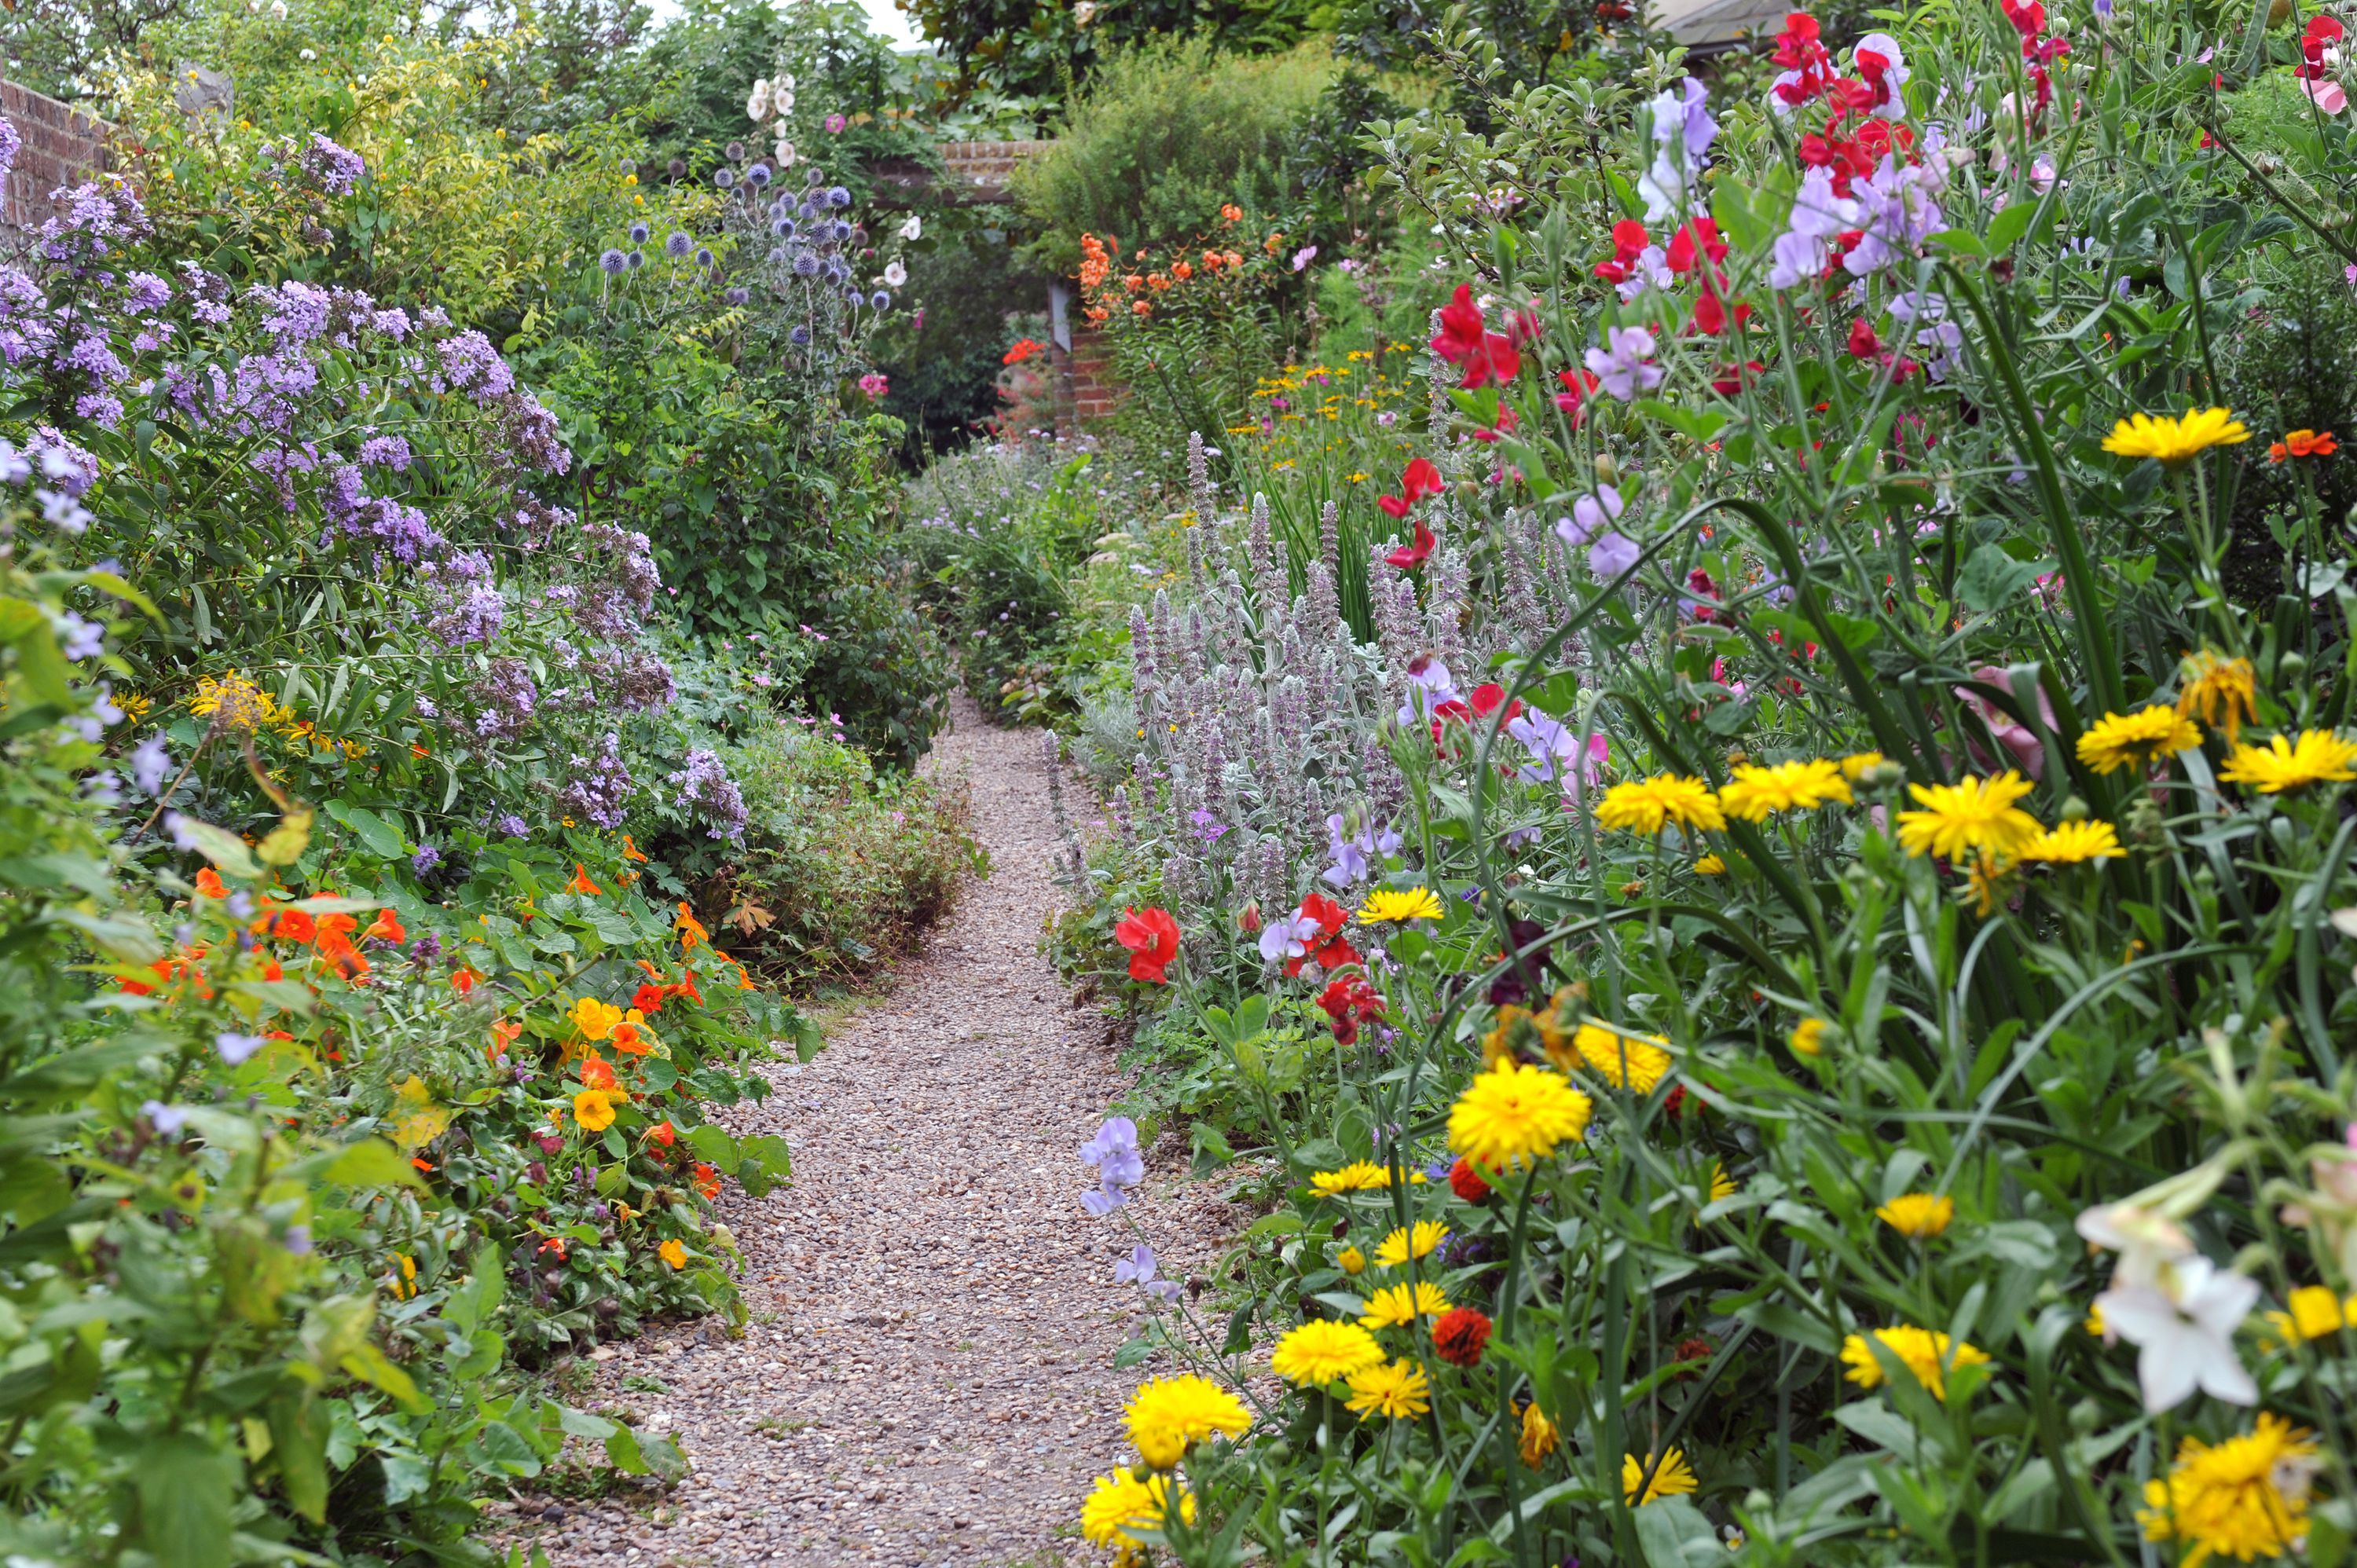 20 best full sun perennials - plants & flowers for sunny gardens